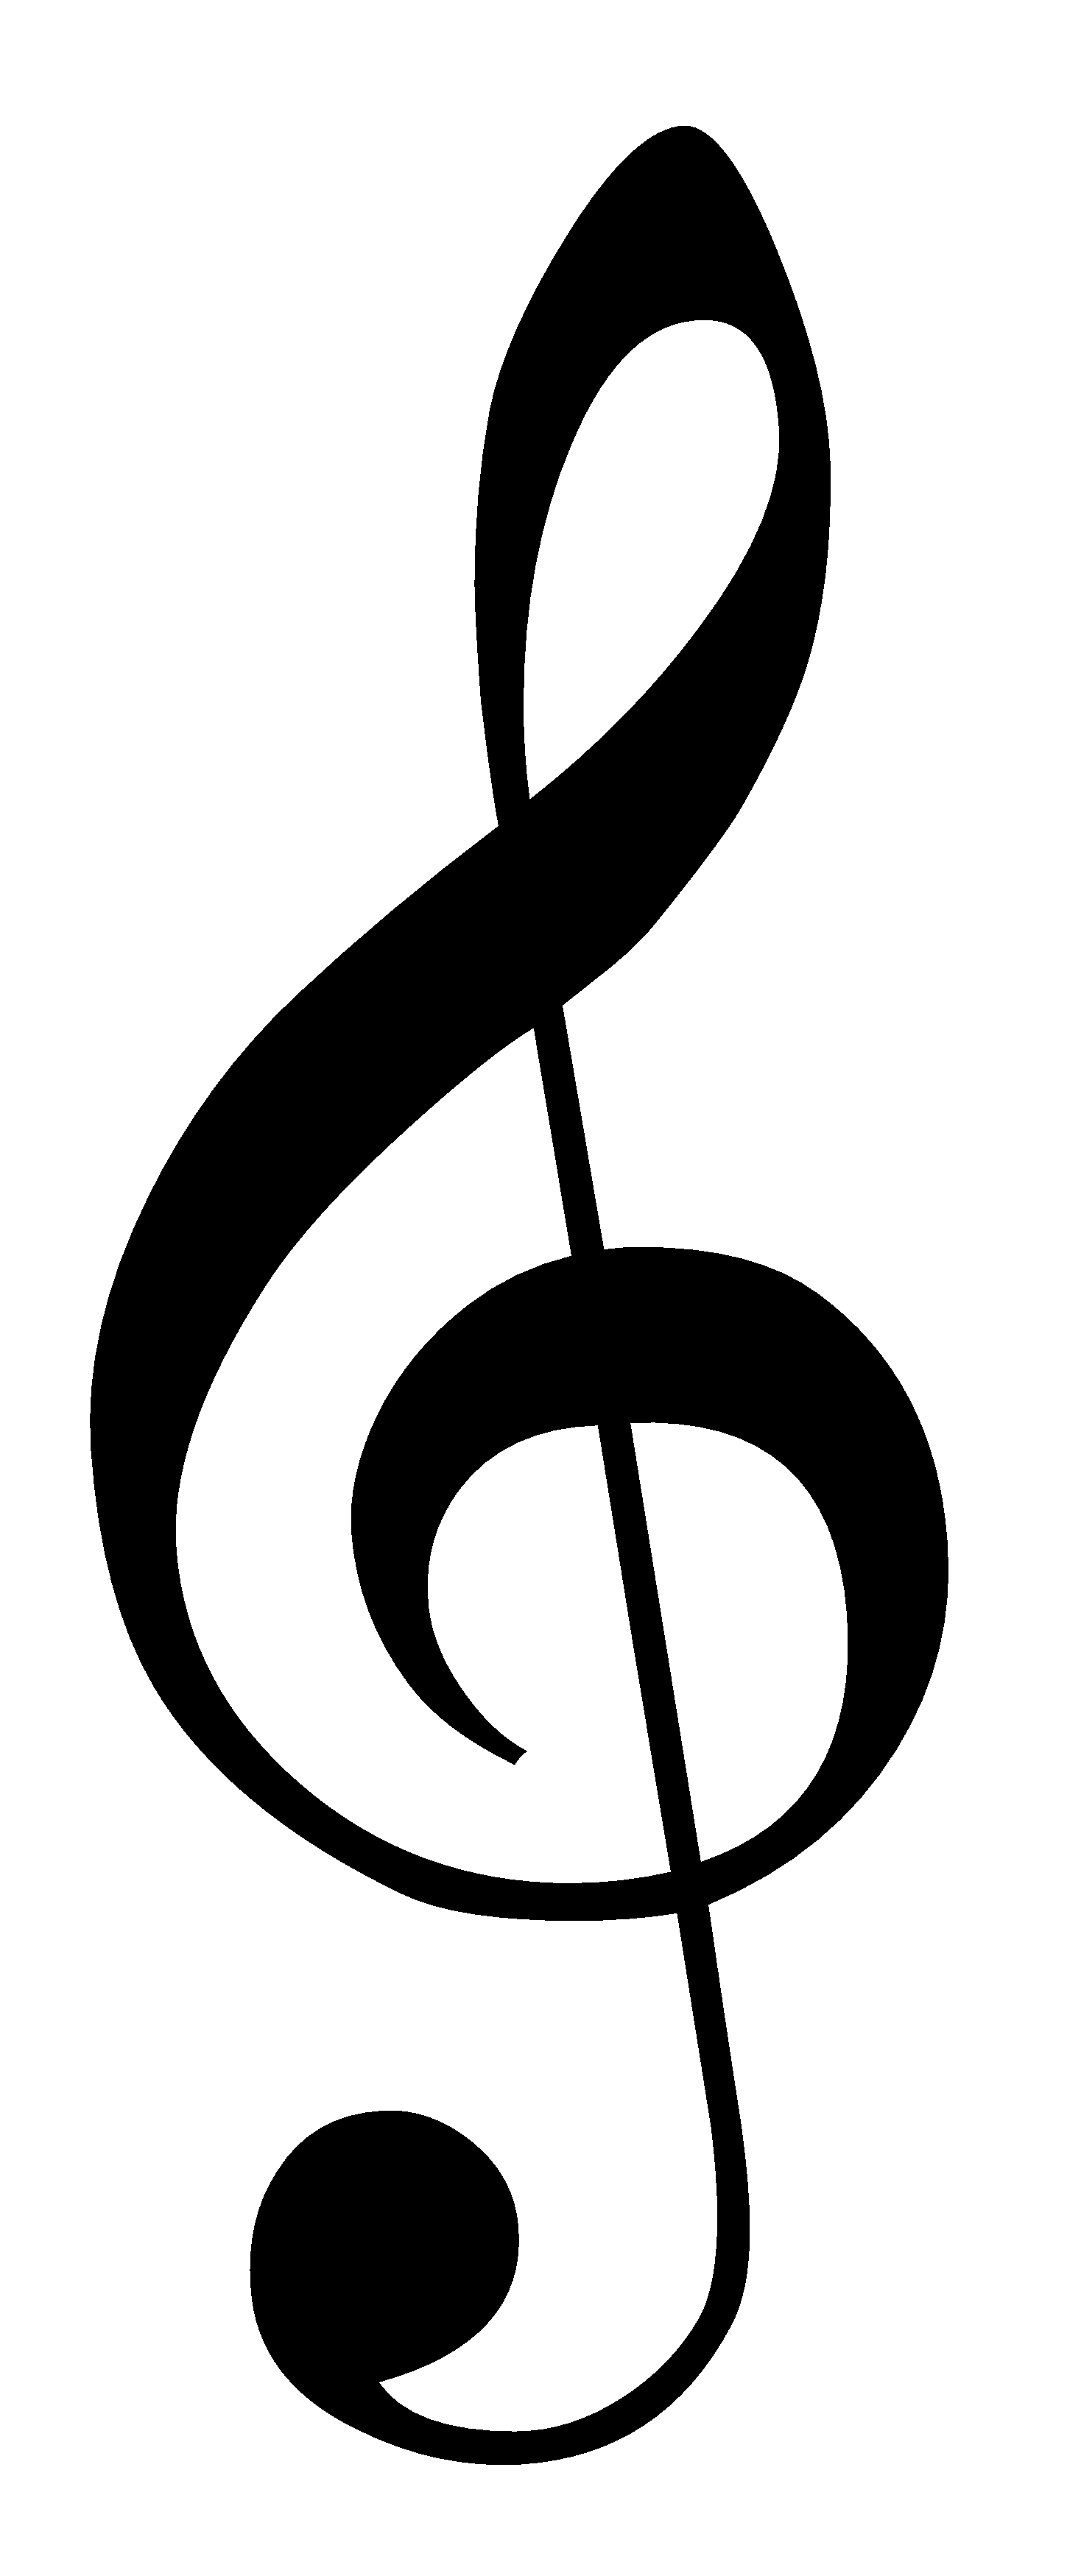 Musical Forms 1 - Bennett